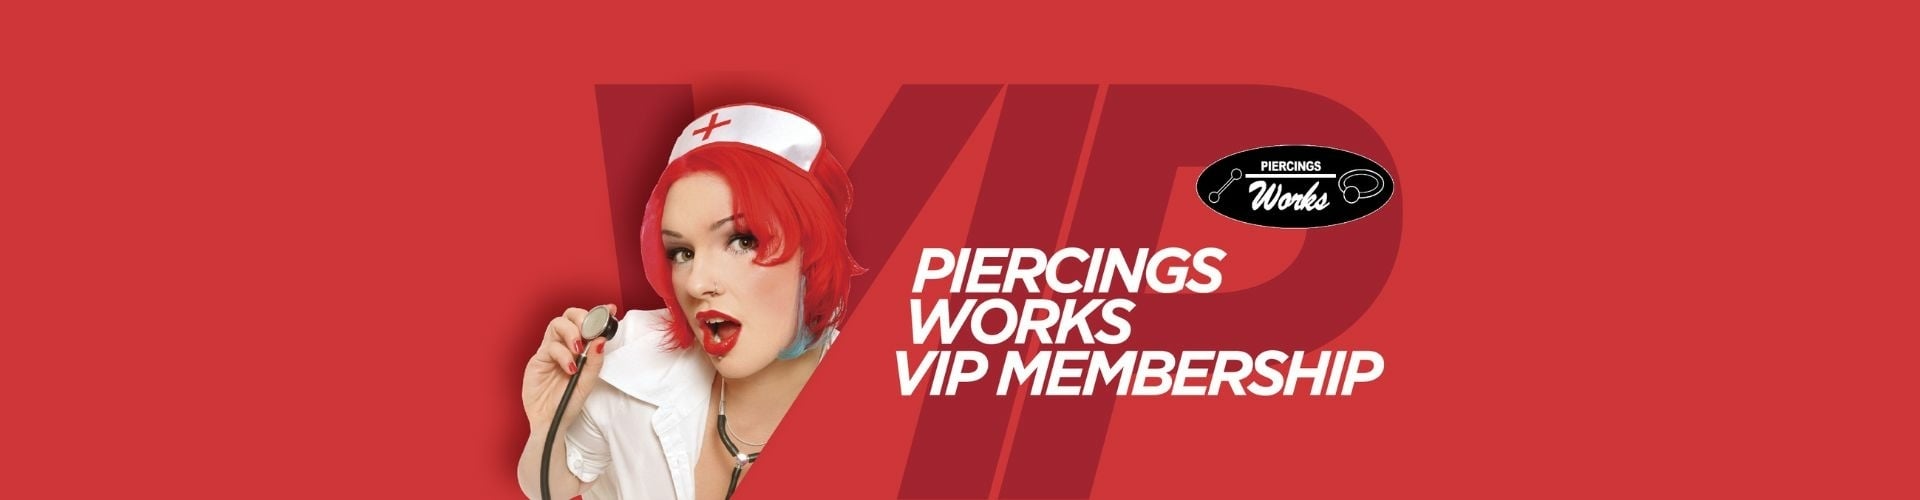 piercings works vip membership